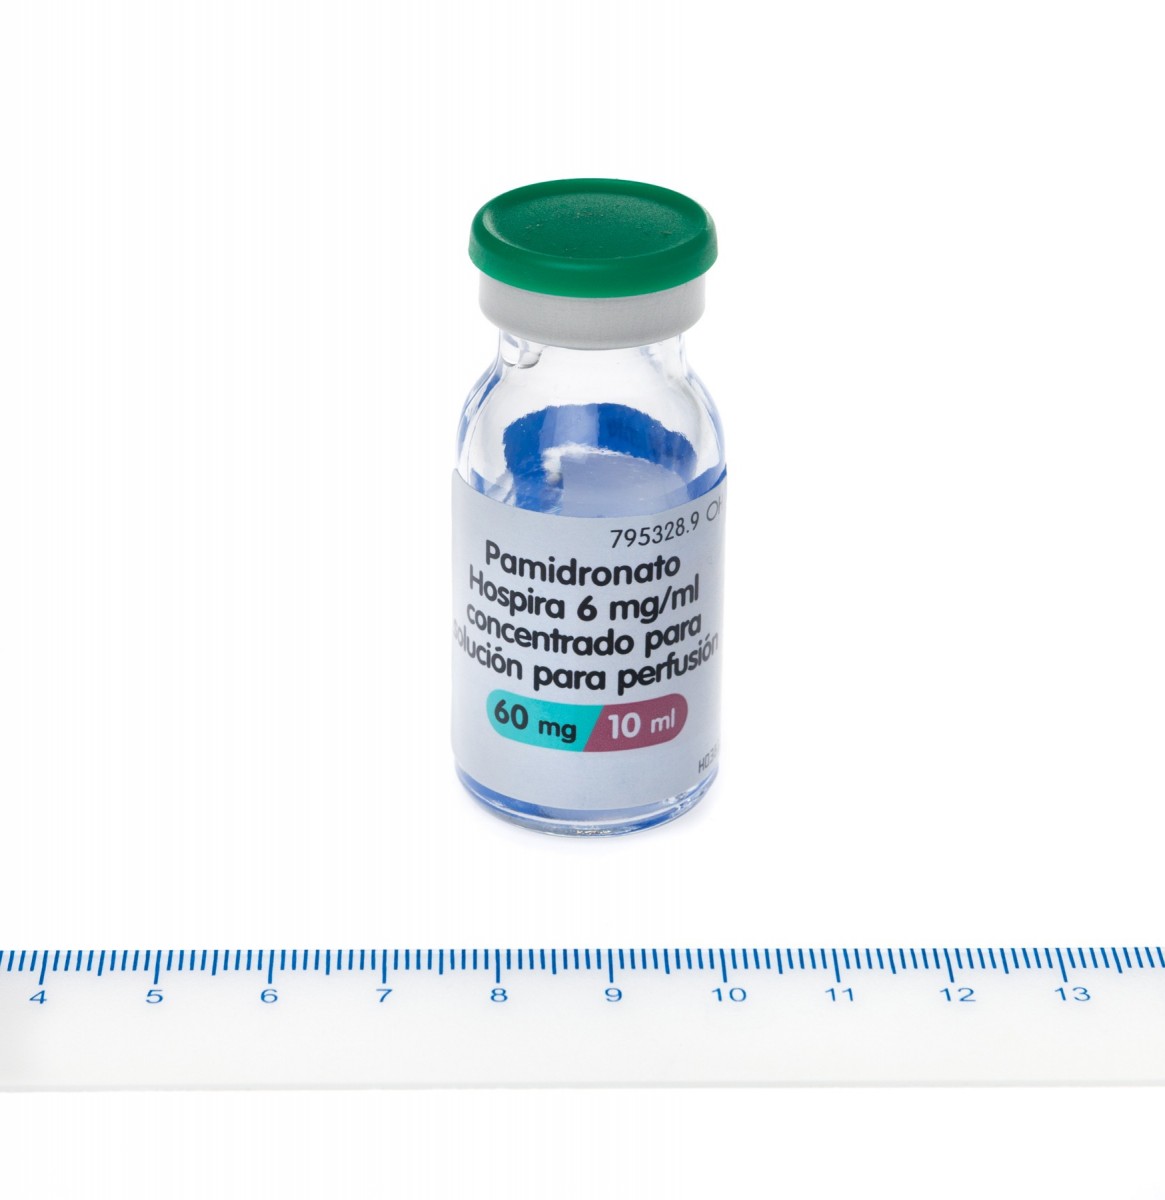 PAMIDRONATO HOSPIRA 6 mg/ml CONCENTRADO PARA SOLUCION PARA PERFUSION , 1 vial de 10 ml fotografía de la forma farmacéutica.